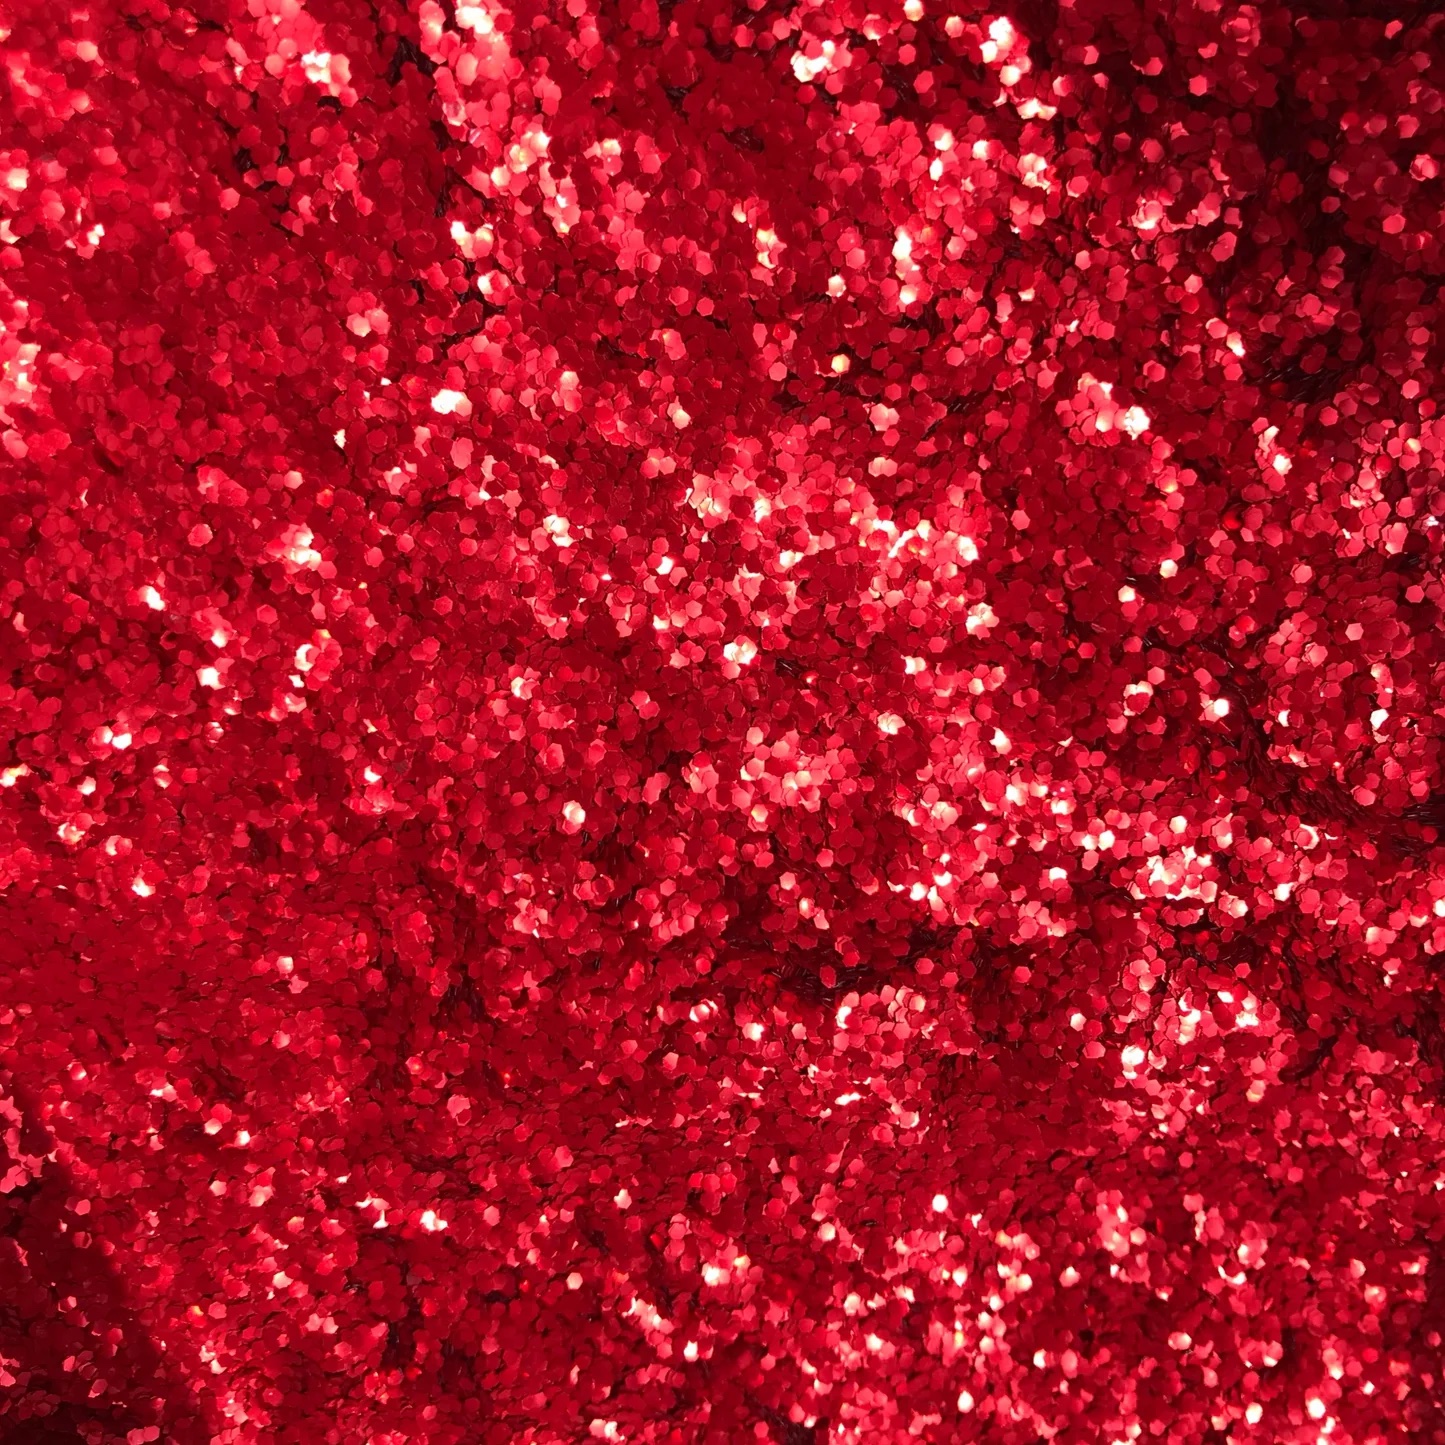 rode glitterornamenten op het lichaamshaar sprankelend